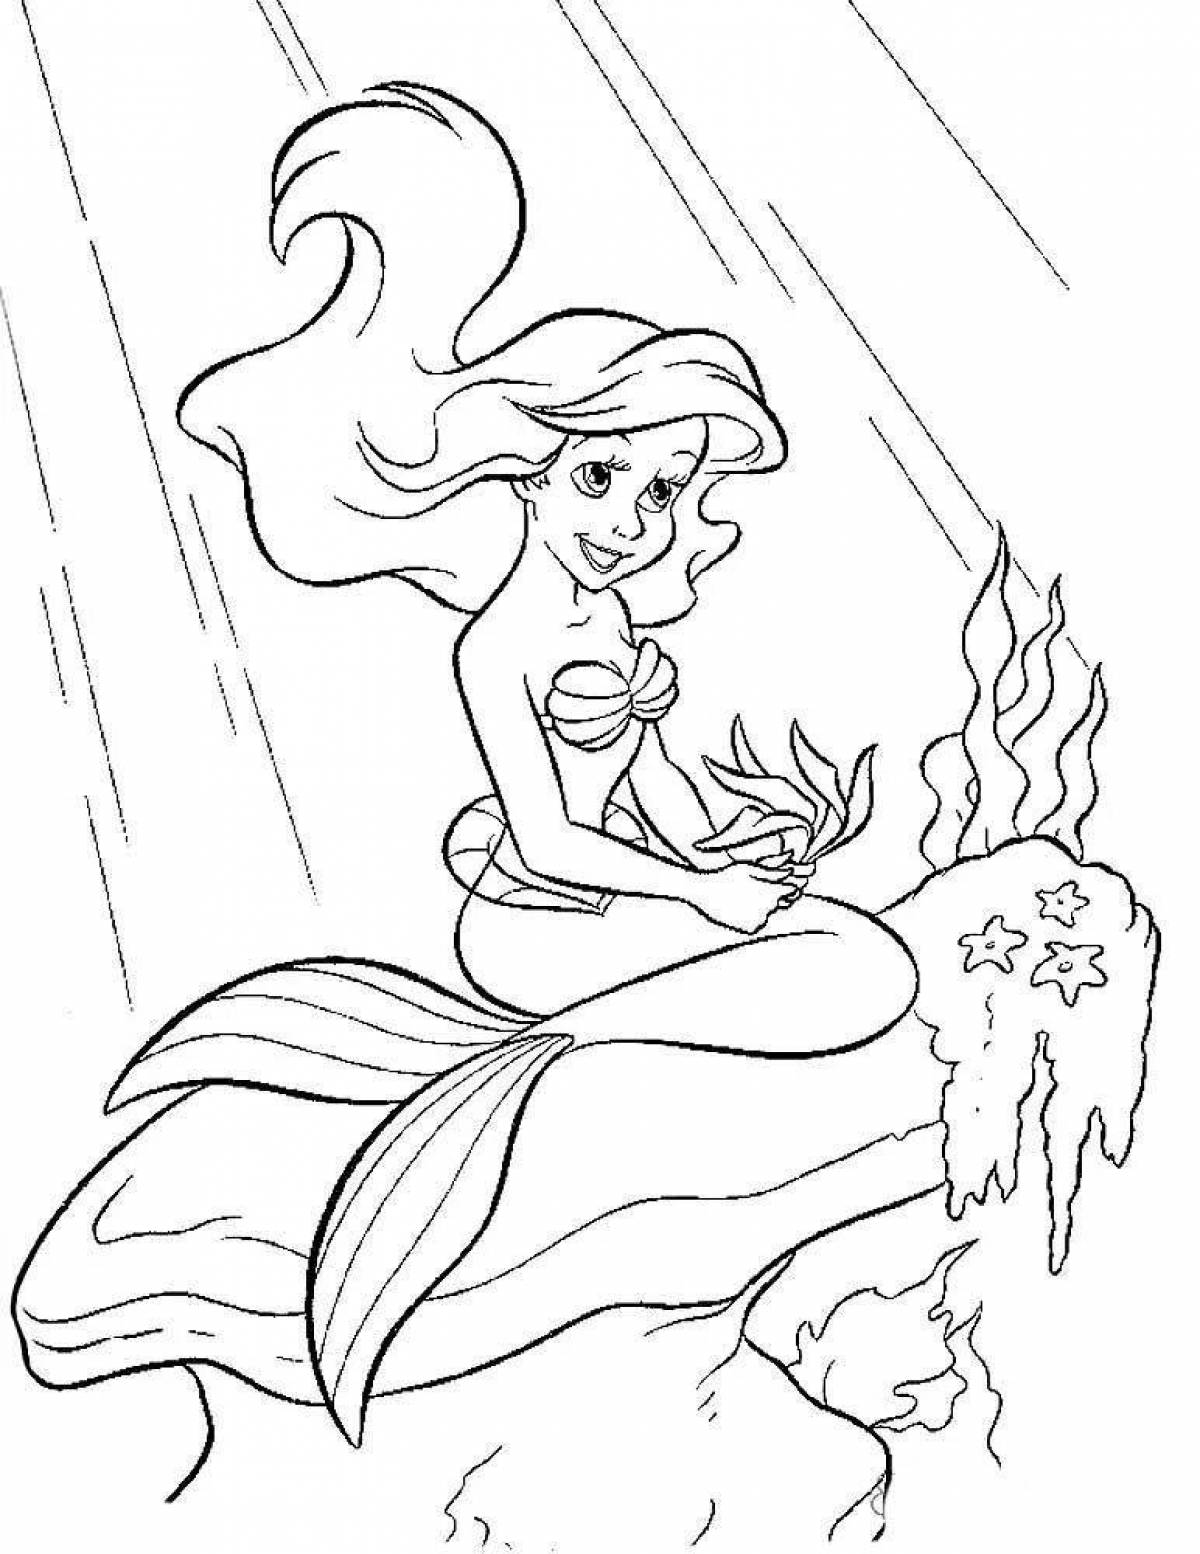 Ariel magic coloring for kids